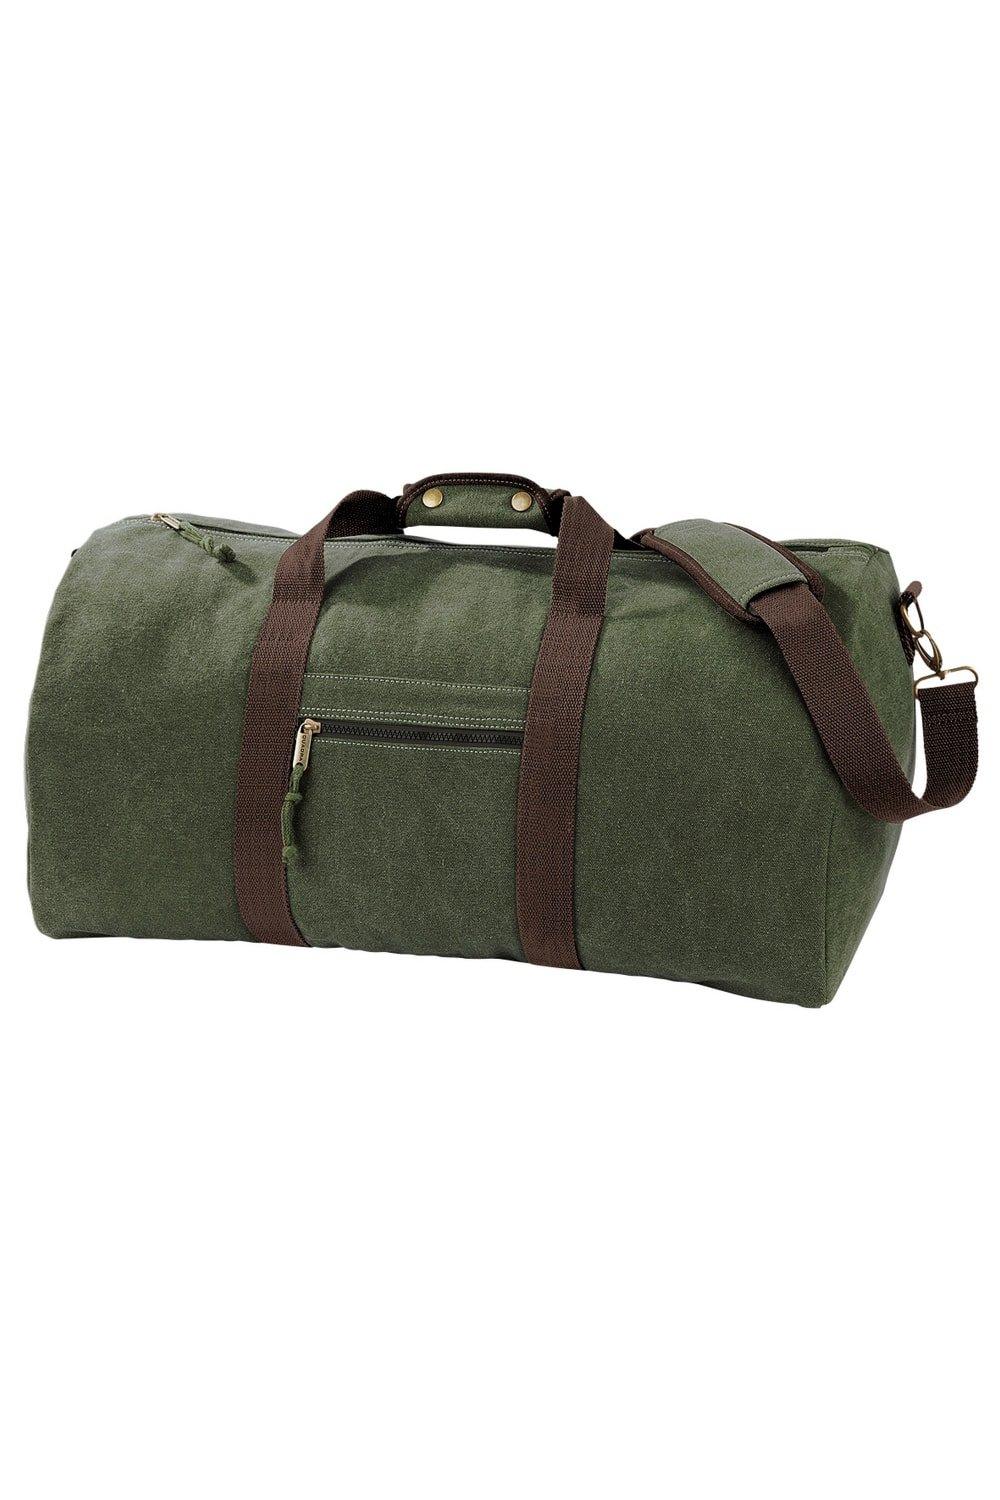 цена Винтажная холщовая дорожная сумка - 45 литров Quadra, зеленый